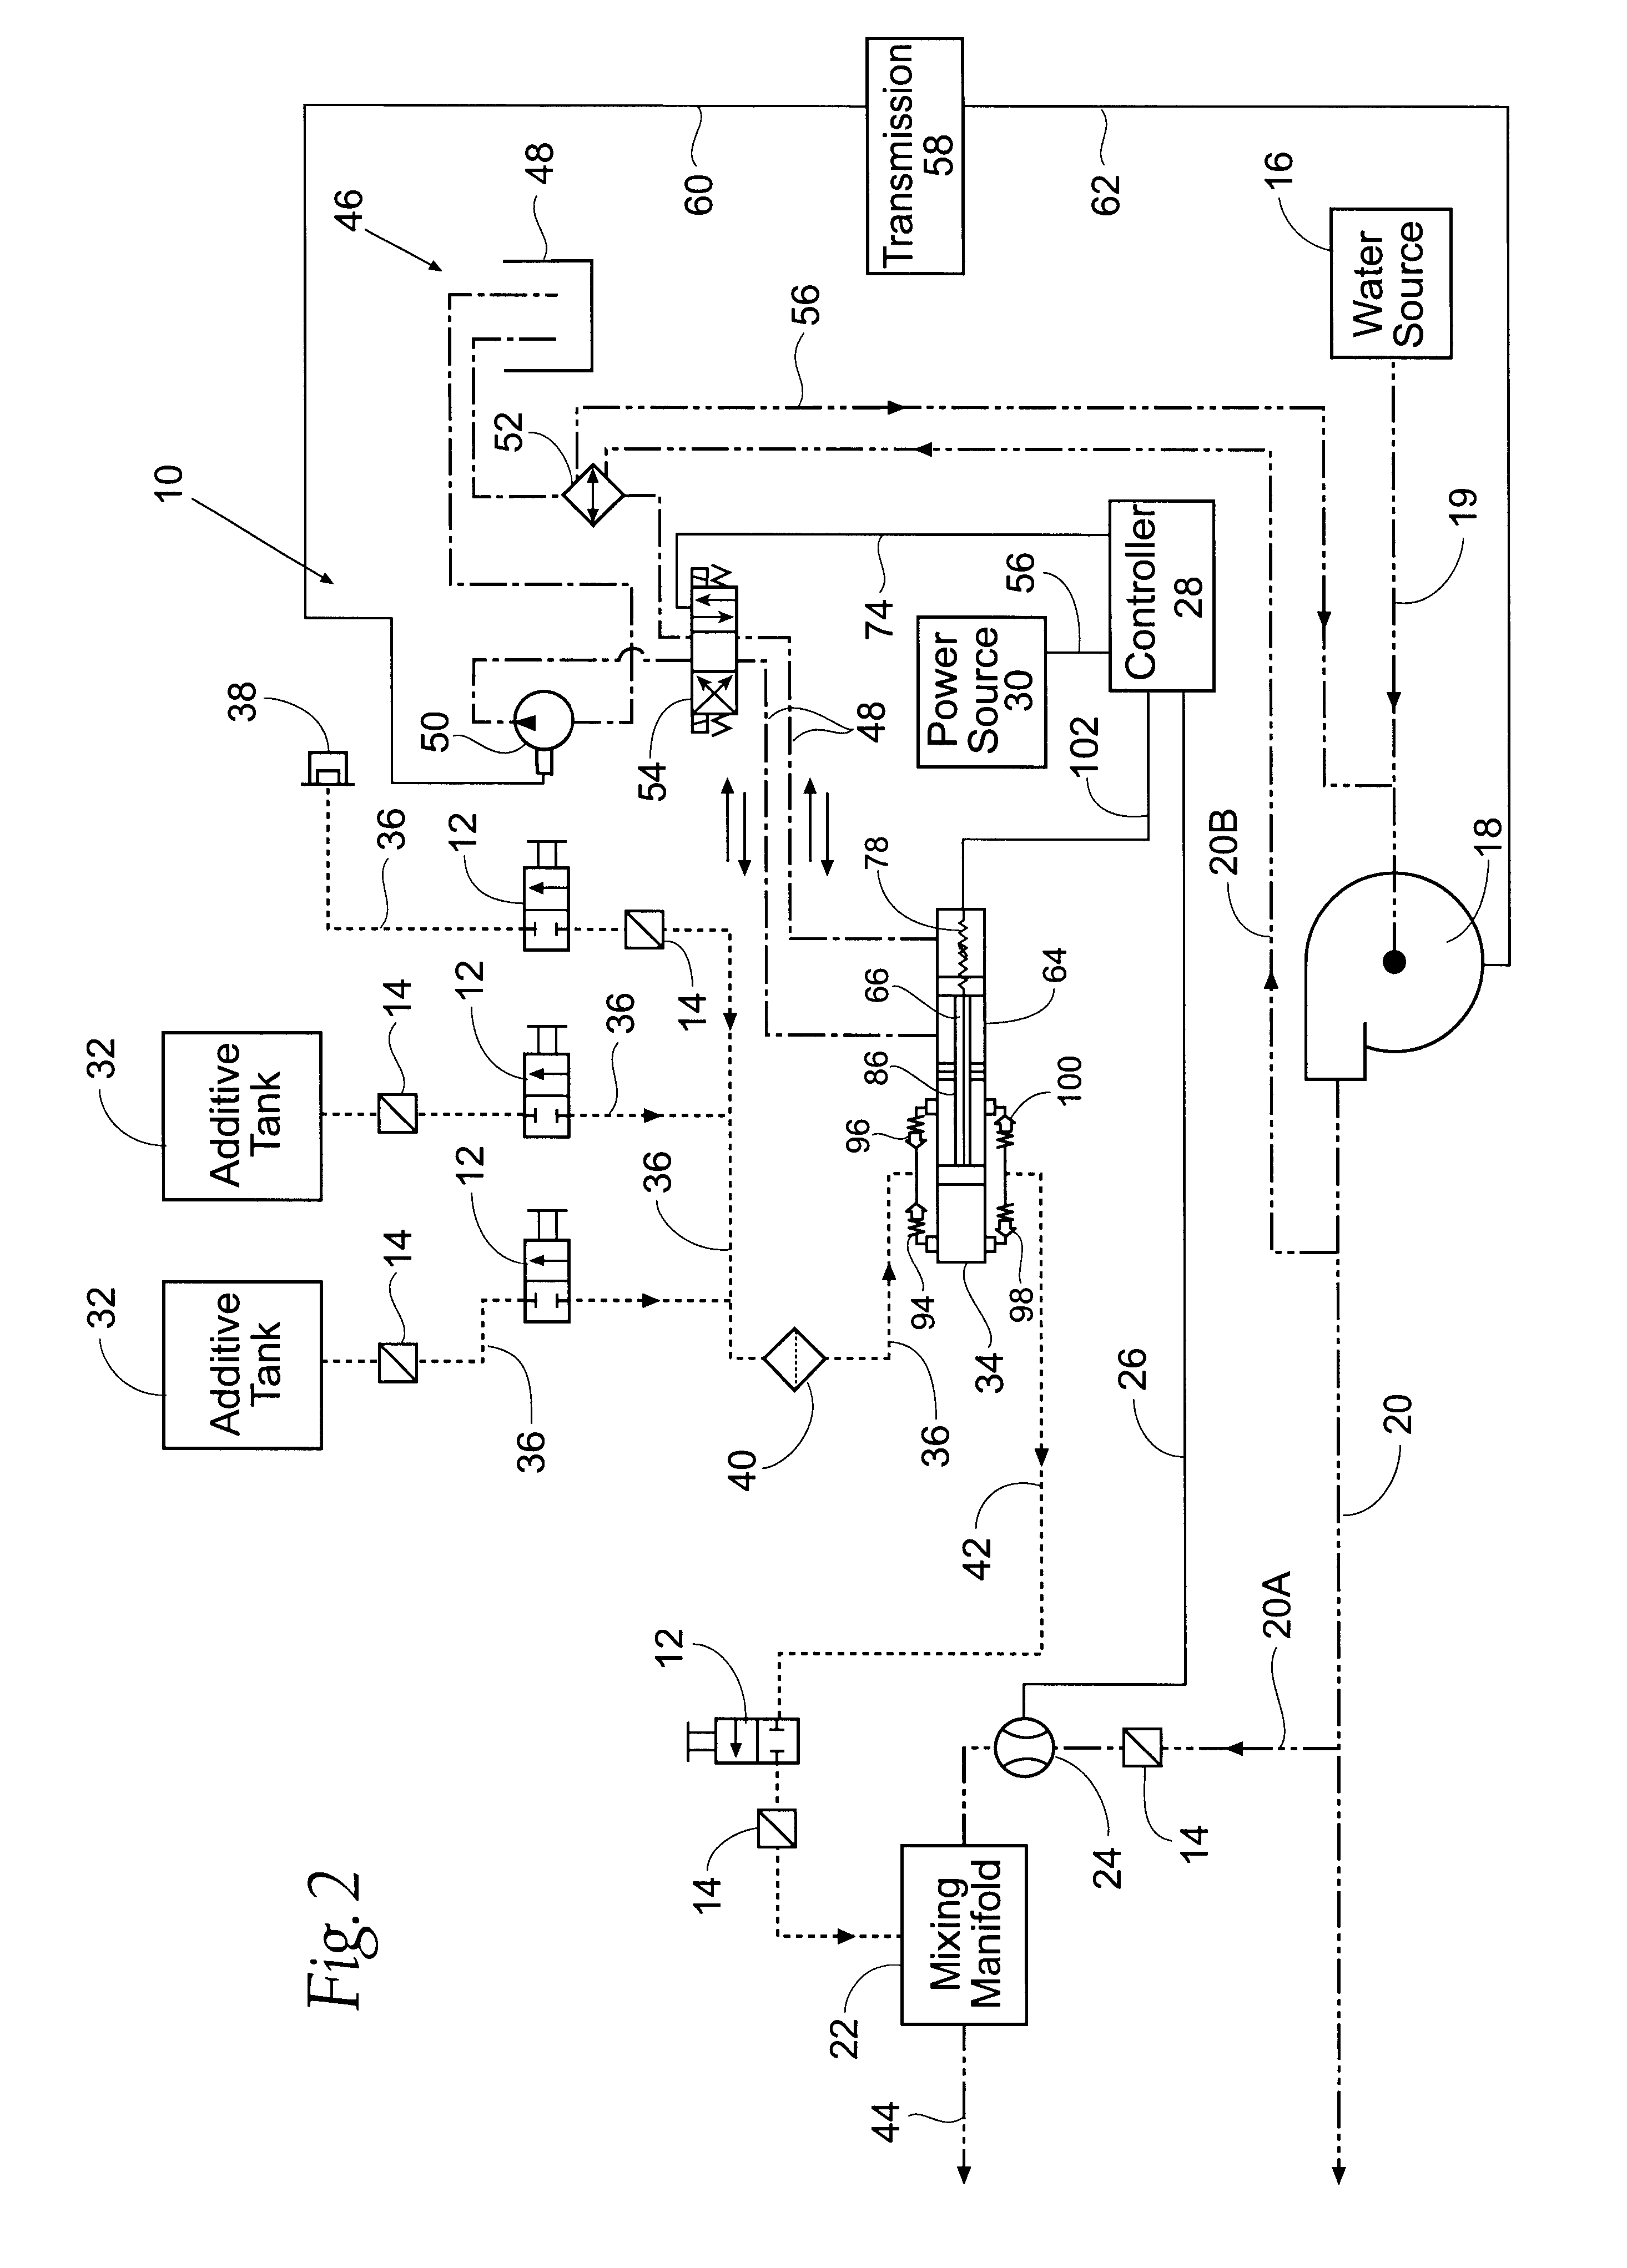 Lionel 2046W Wiring Diagram | Manual E-Books - Lionel Train Wiring Diagram